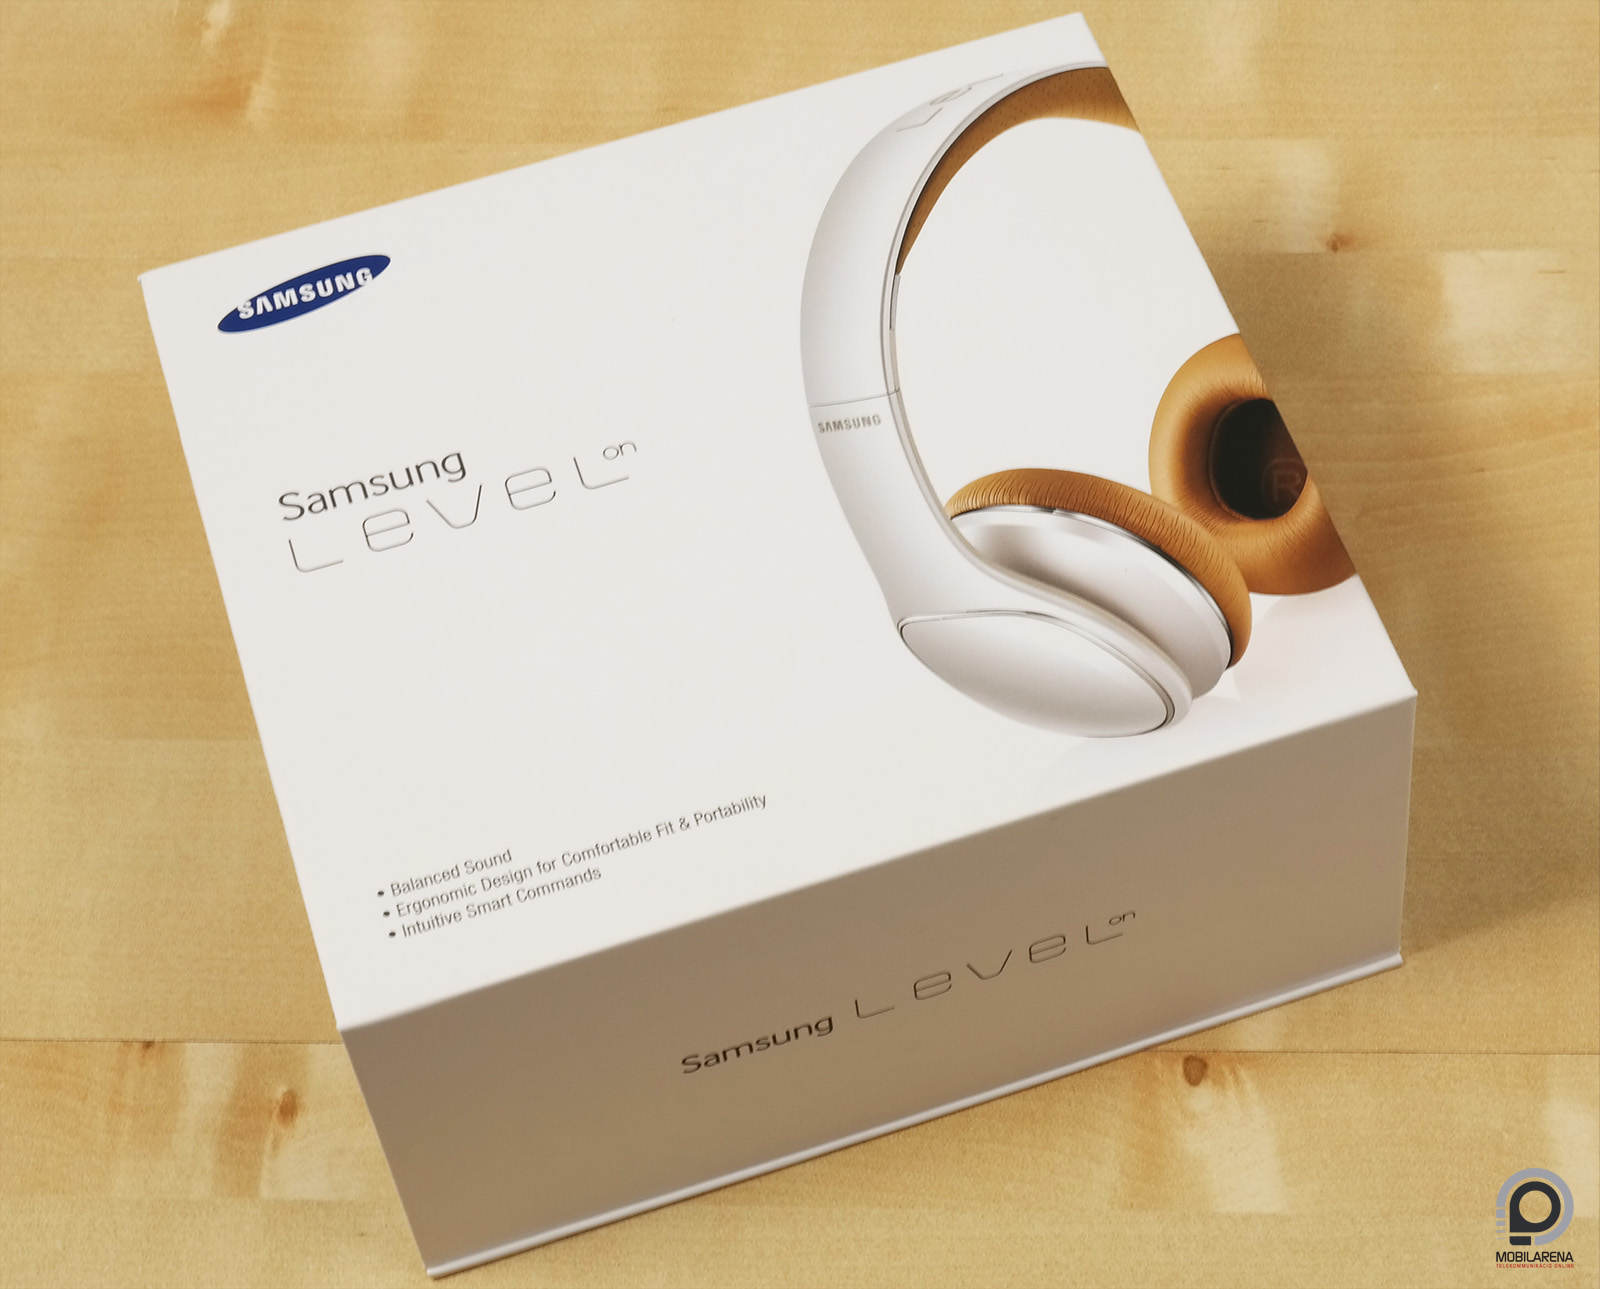 Prémium fül- és fejhallgatók a Samsungtól - Mobilarena Tartozékok teszt